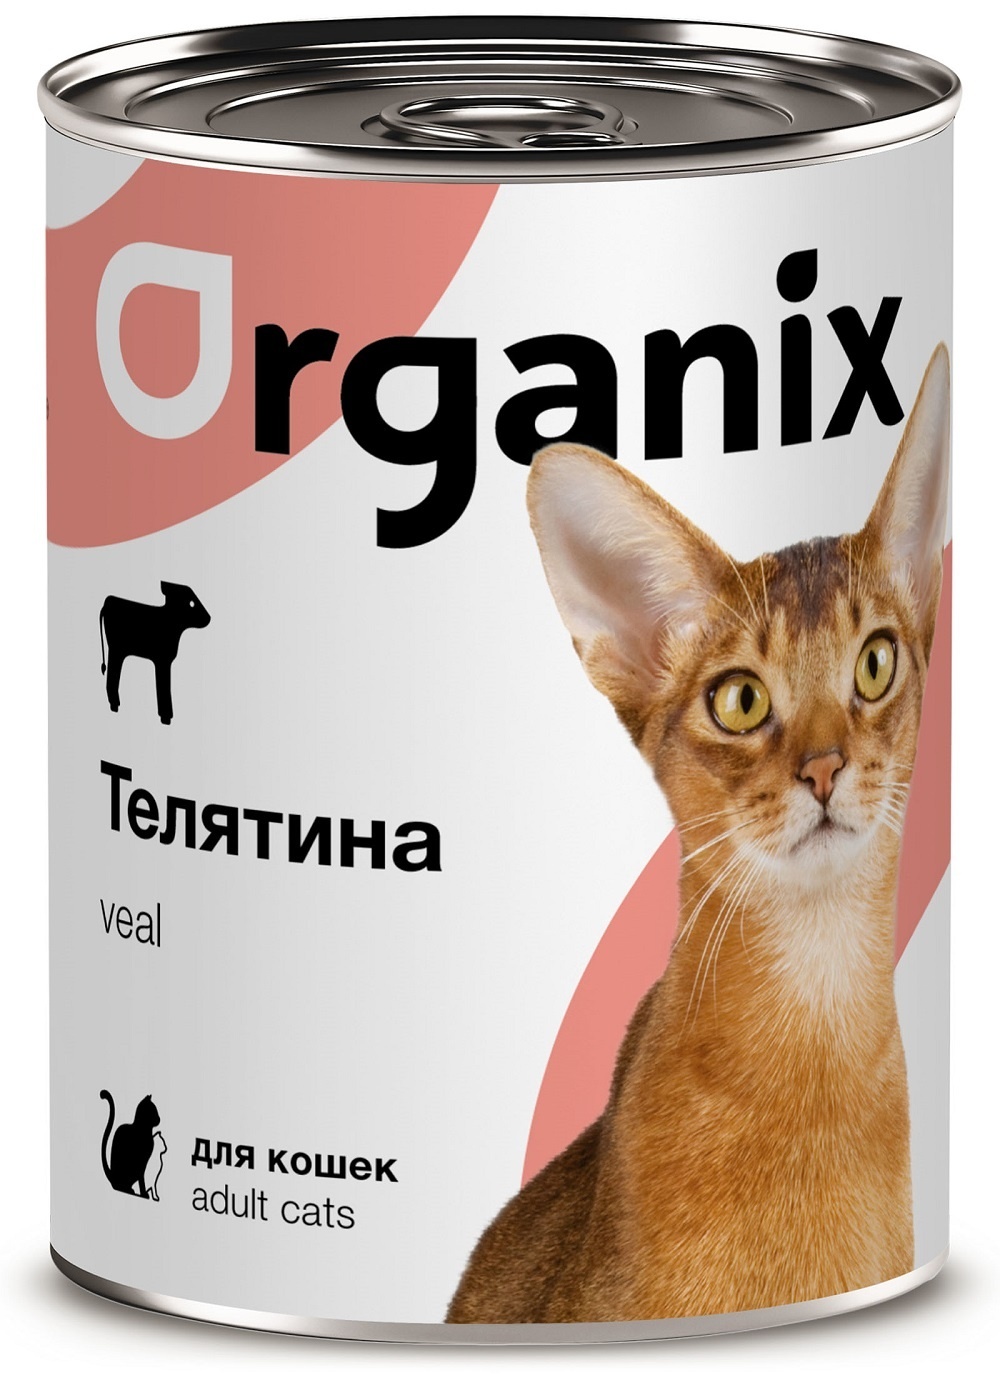 Organix консервы Organix консервы с телятиной для кошек (250 г) organix консервы organix консервы с говядиной и печенью для кошек 250 г